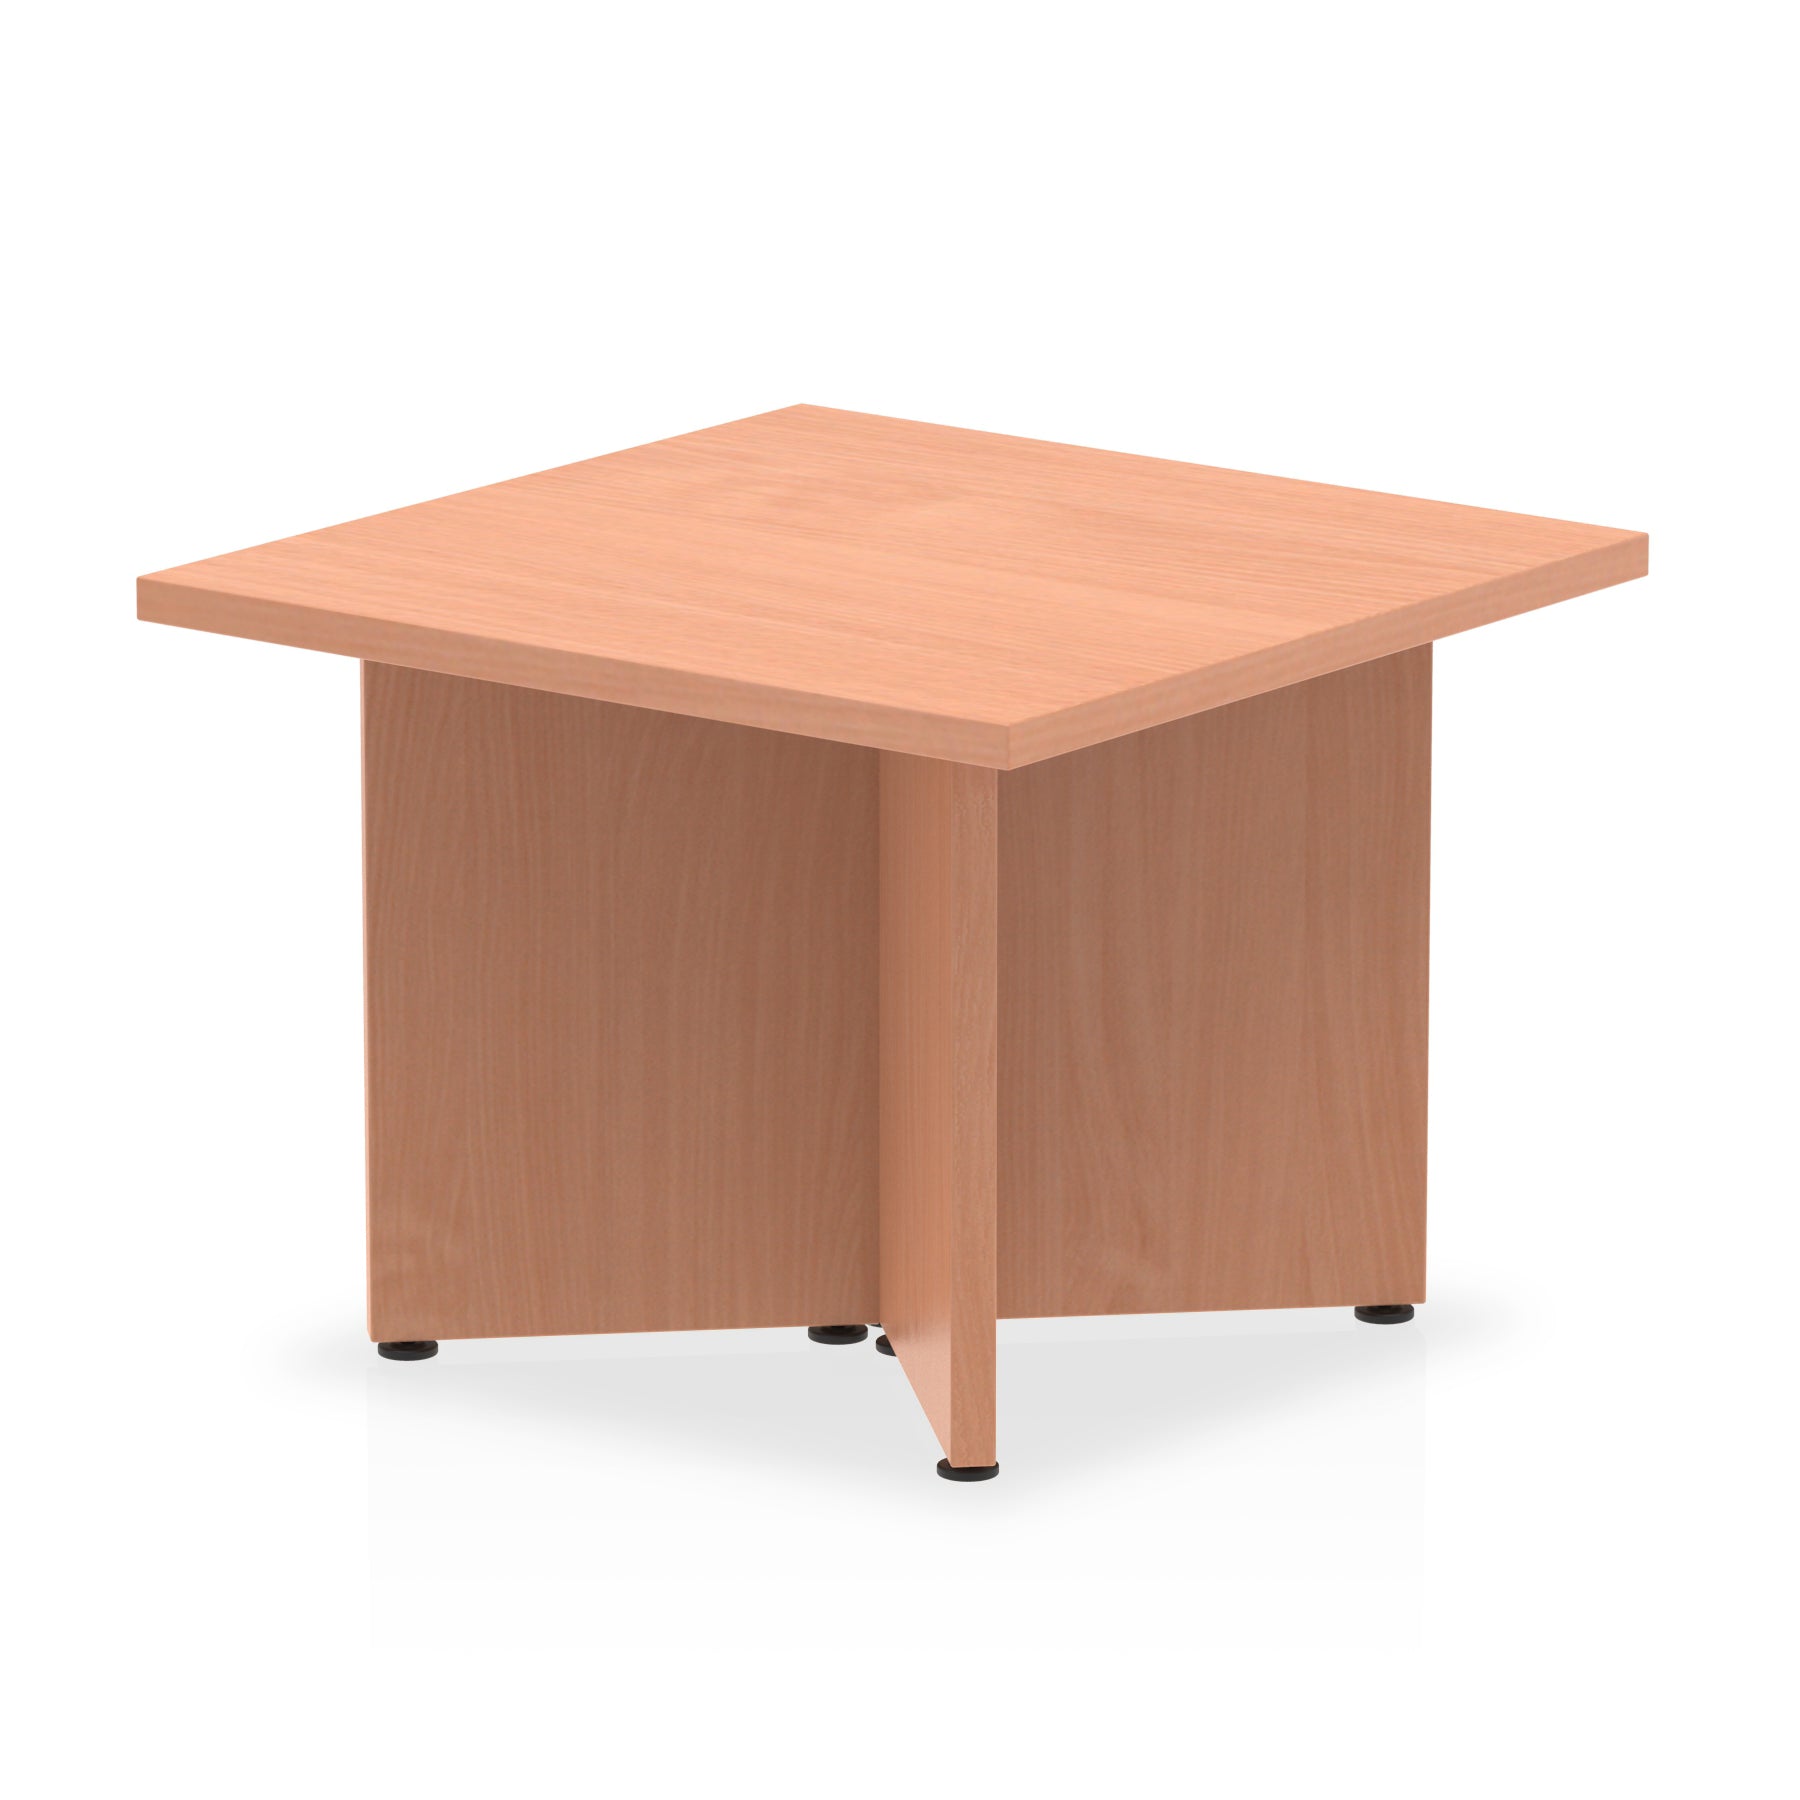 Photos - Dining Table Dynamic Office Solutions Impulse Coffee Table Arrowhead Leg I003416 